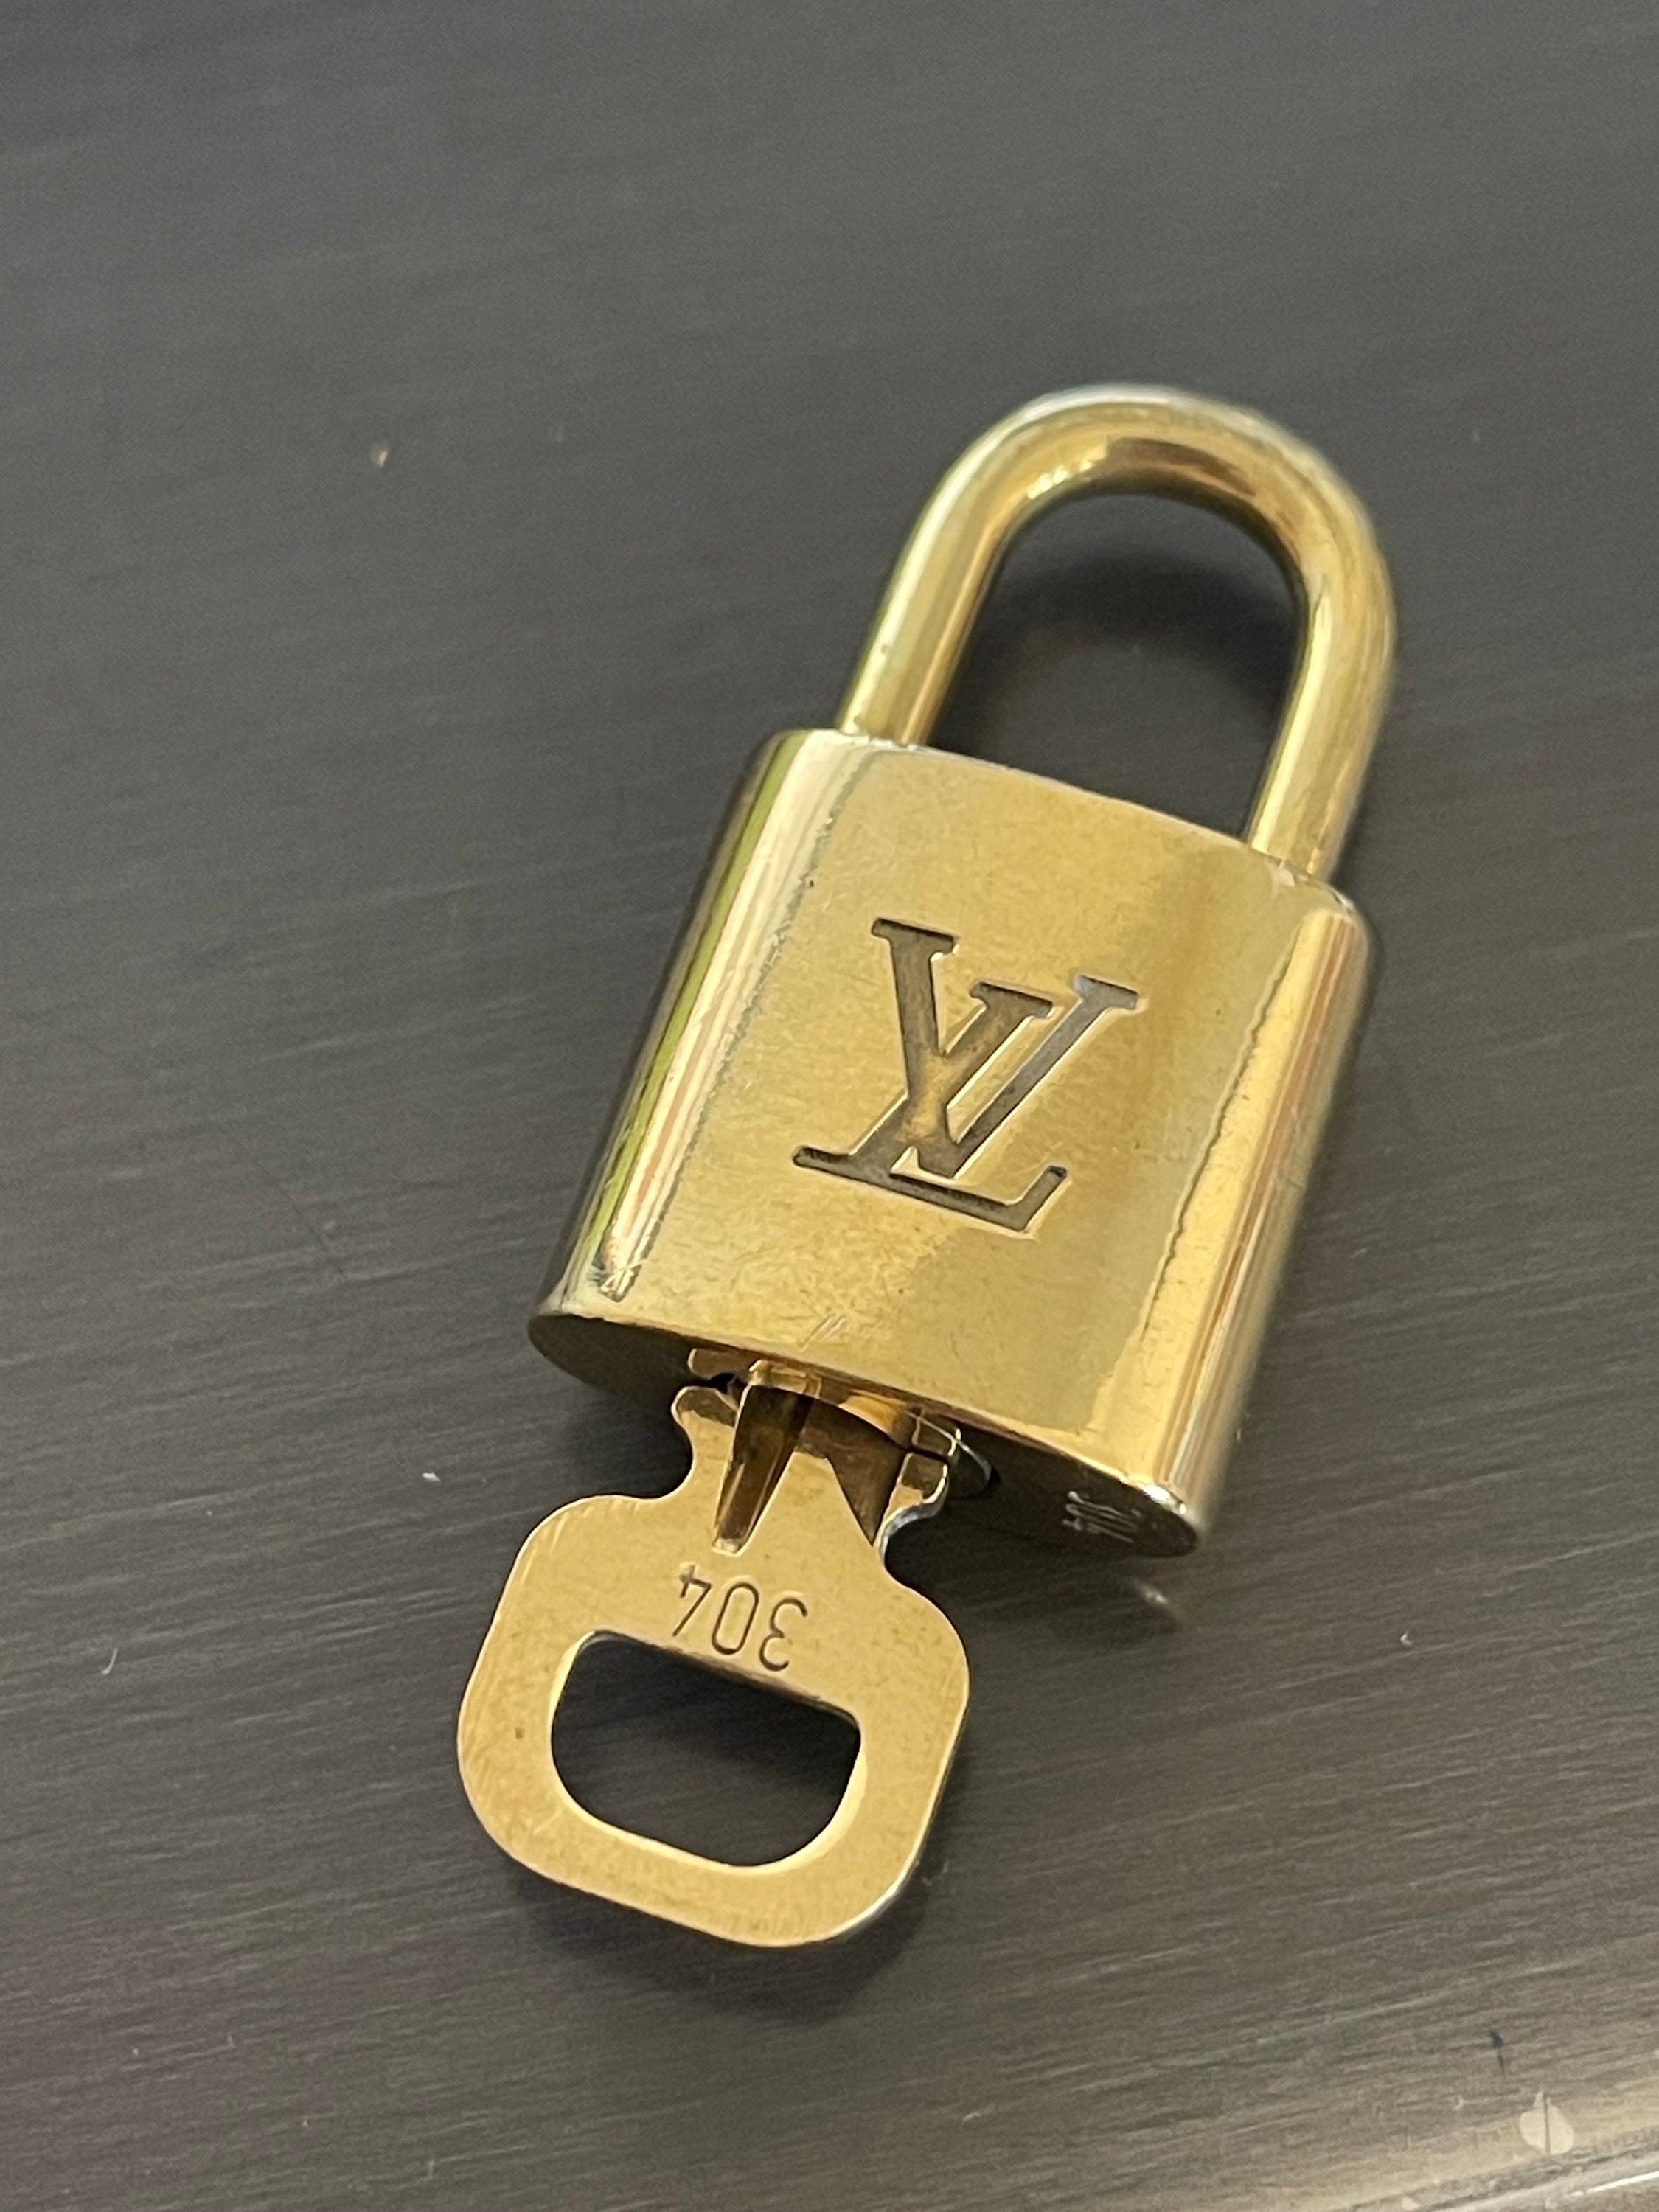 authentic LOUIS VUITTON LV padlock key set bag accessory brass gold #317